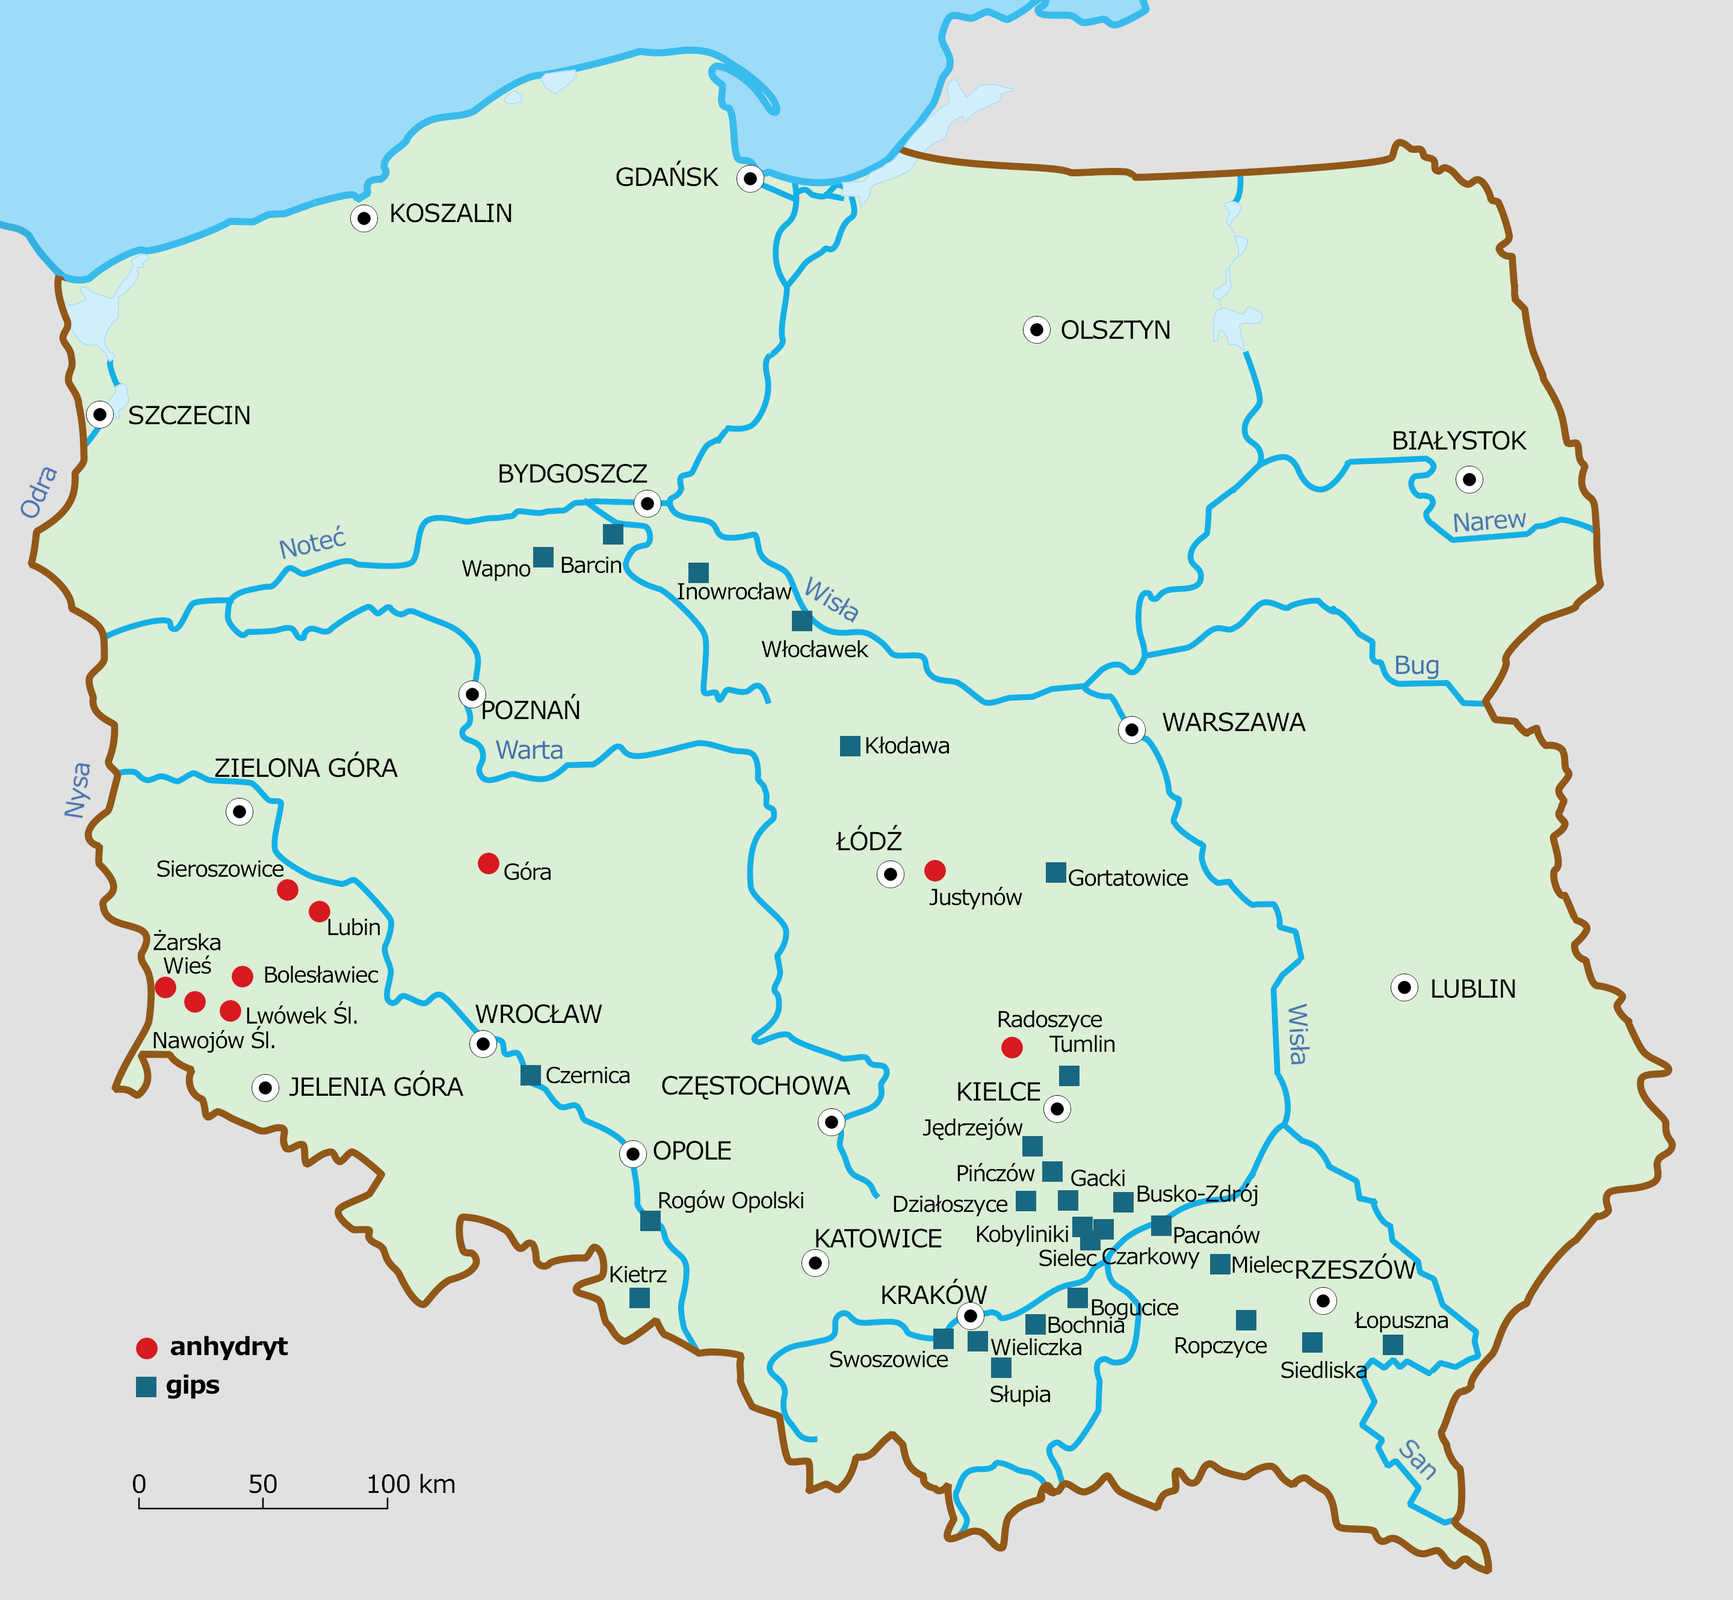 Mapa Polski, na której przedstawiono rozmieszczenie złóż gipsu i anhydrytu na terenie Polski. Złoża anhydrytu (reprezentowane są czerwoną kropką), a gipsu (niebieskim kwadratem). Złoża anhydrytu występują na obszarze rozciągającym się pomiędzy Zieloną Górą a Jelenią Górą,  w takich miejscowościach, jak: Żarska Wieś, Nawojów, Lwówek Śląski, Bolesławiec, Lubin, Sieroszowice, Góra, Justynów, Radoszyce. Złoża gipsu występują wzdłuż Wisły, mniej więcej od okolic Krakowa, gdzie skupiska złóż są największe po Bydgoszcz, w miejscowościach: Wapno, Barcin, Inowrocław, Kłodawa, Gortatowice, Czernica, Rogów Opolski, Kietrz, Tumlin, Jędrzejów, Pińczów, Gacki, Busko‑Zdrój, Działoszyce, Kobylinki, Sielec, Pacanów, Czarkowy, Mielec, Bogucice, Bochnia, Wieliczka, Swoszowice, Słupia, Ropczyce, Siedliska, Łopuszna.